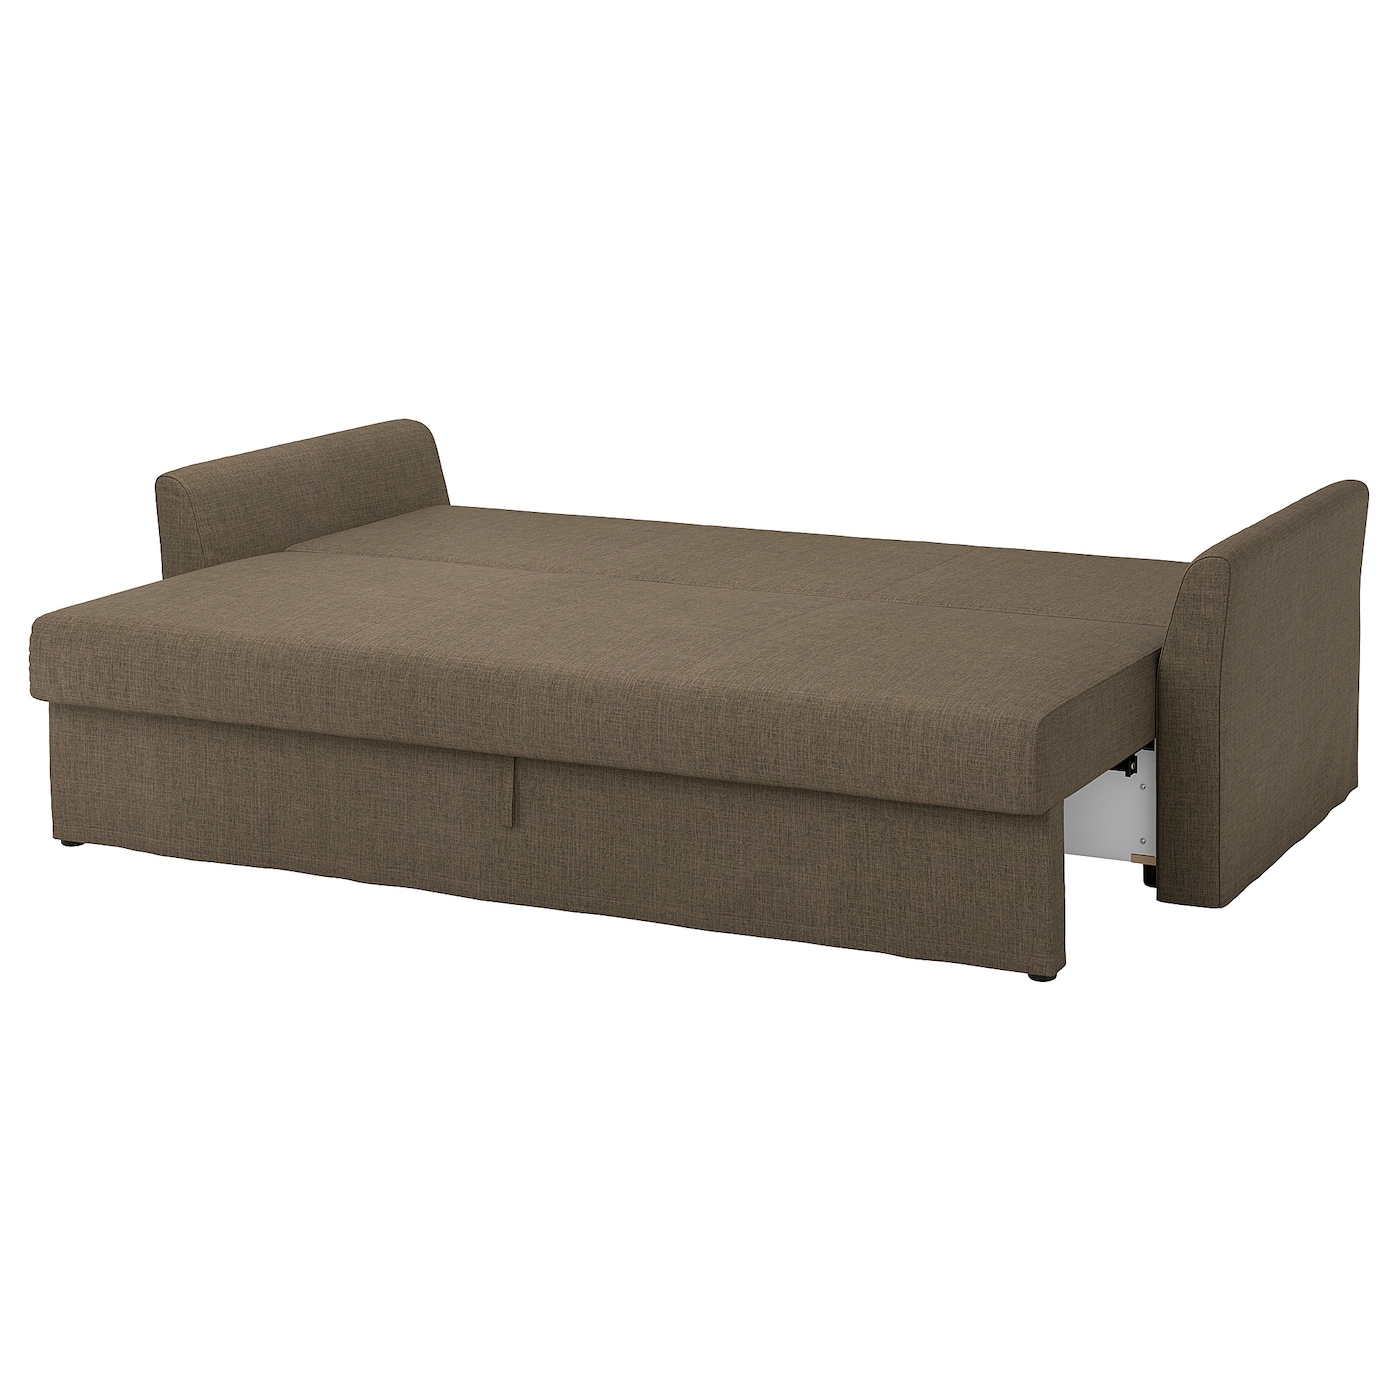 диван кровать портленд коричневый экокожа ХОЛМСАНД 3-х раскладной диван-кровать, Киланда серо-коричневый HOLMSUND IKEA